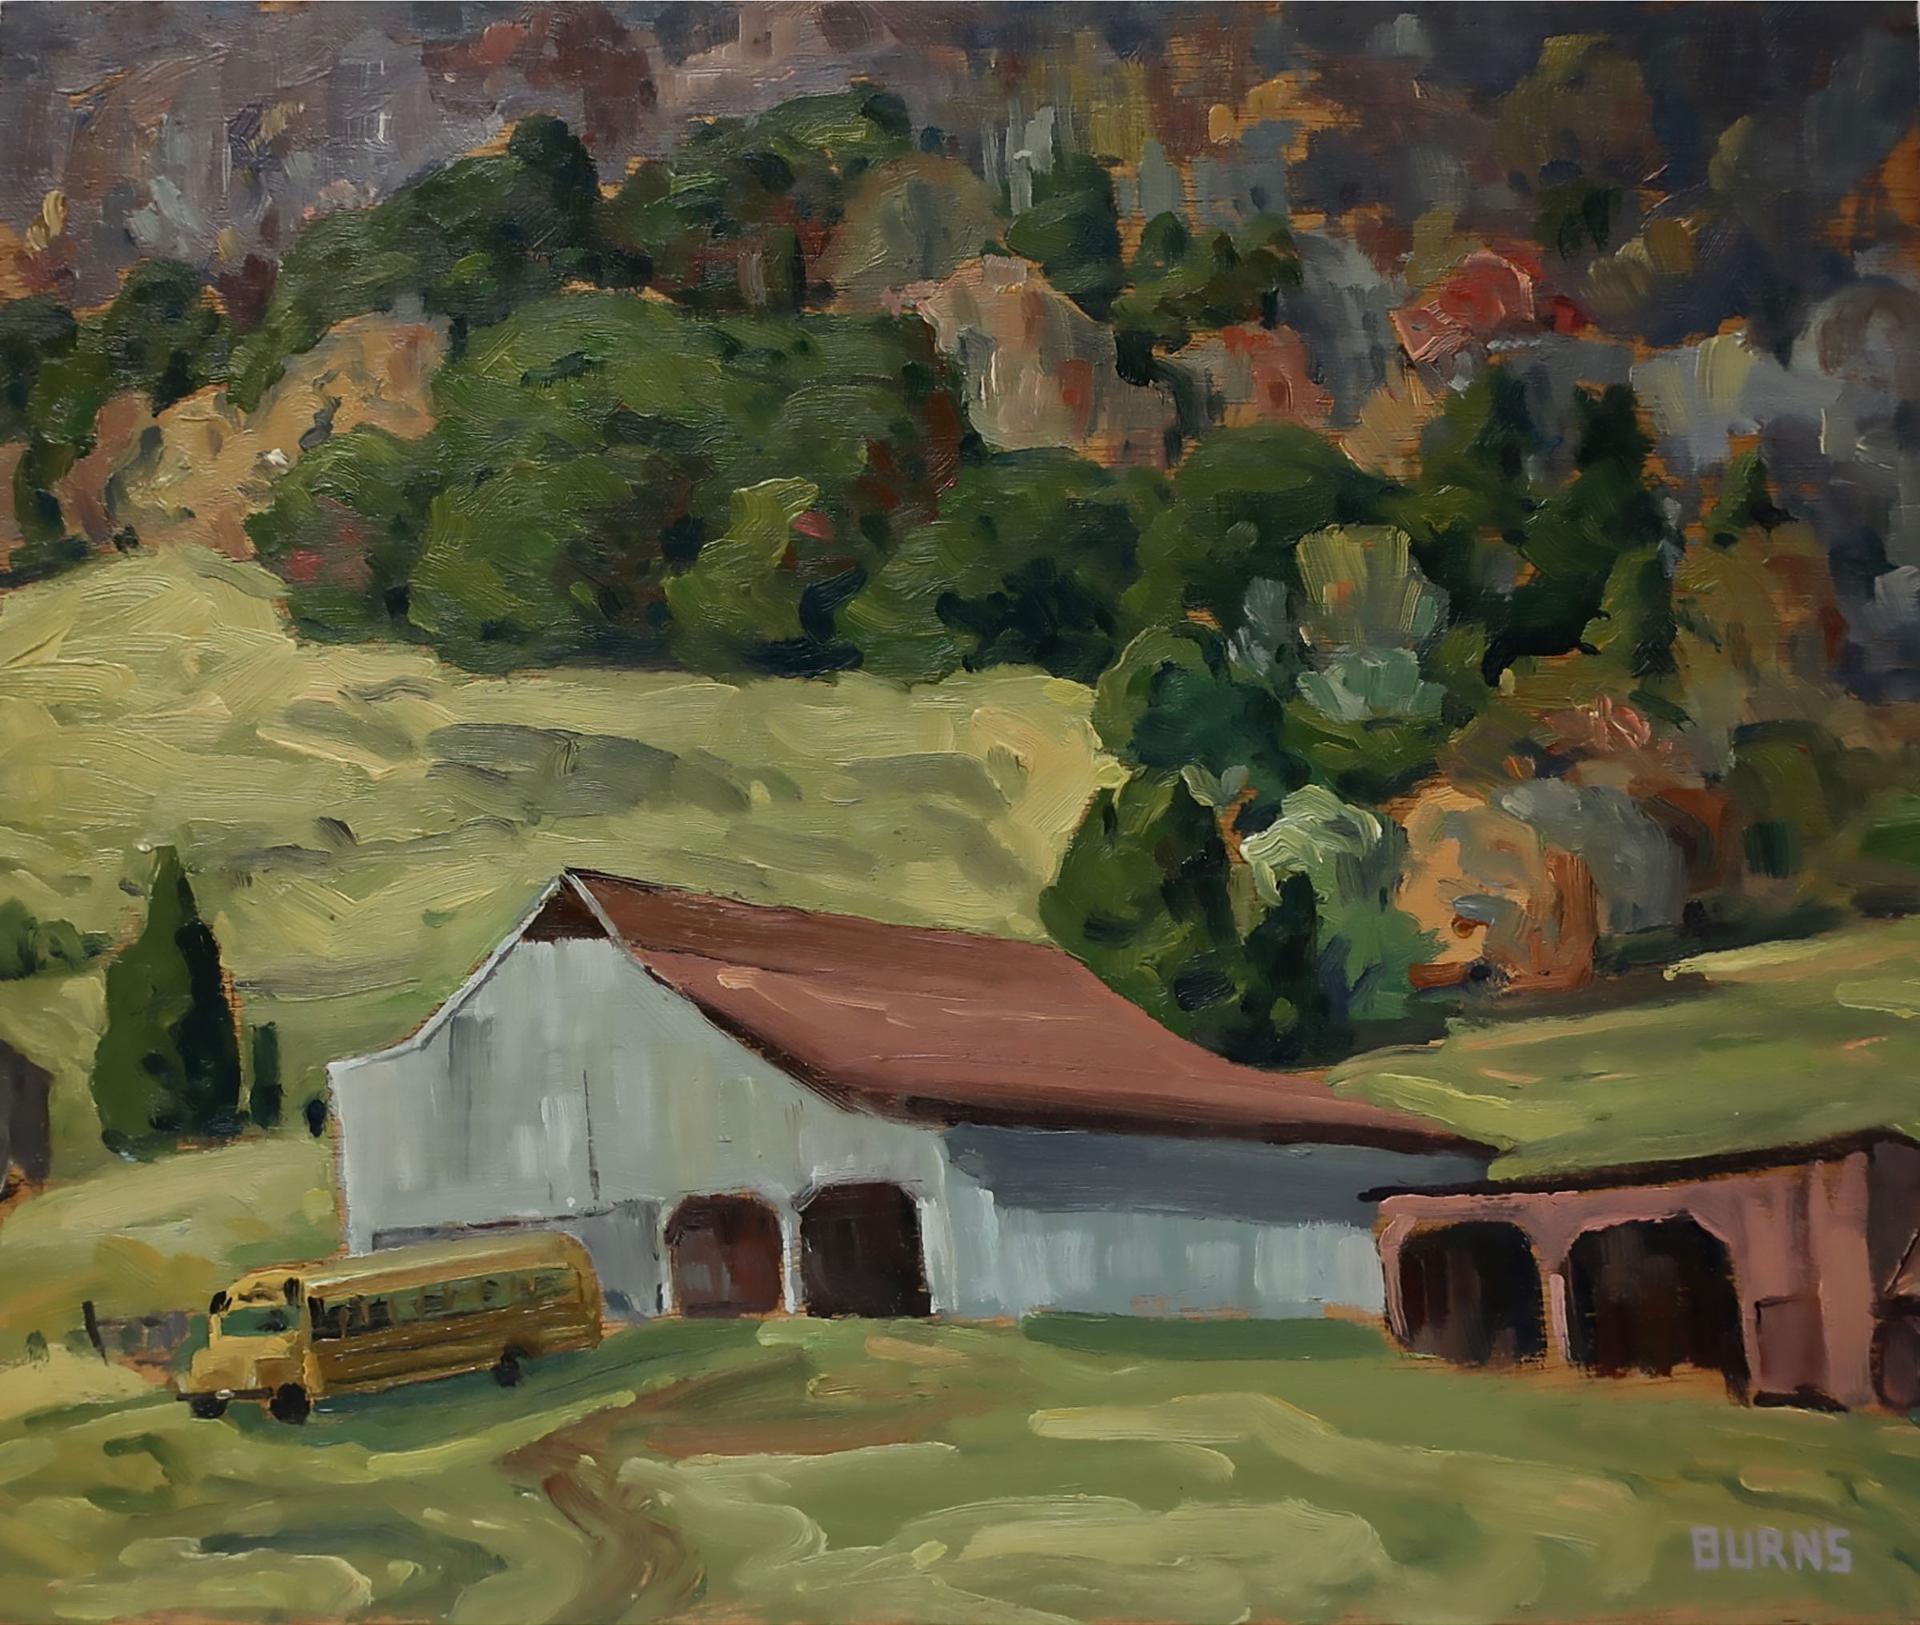 Bill Burns (1960) - Hillside Farm, Virginia